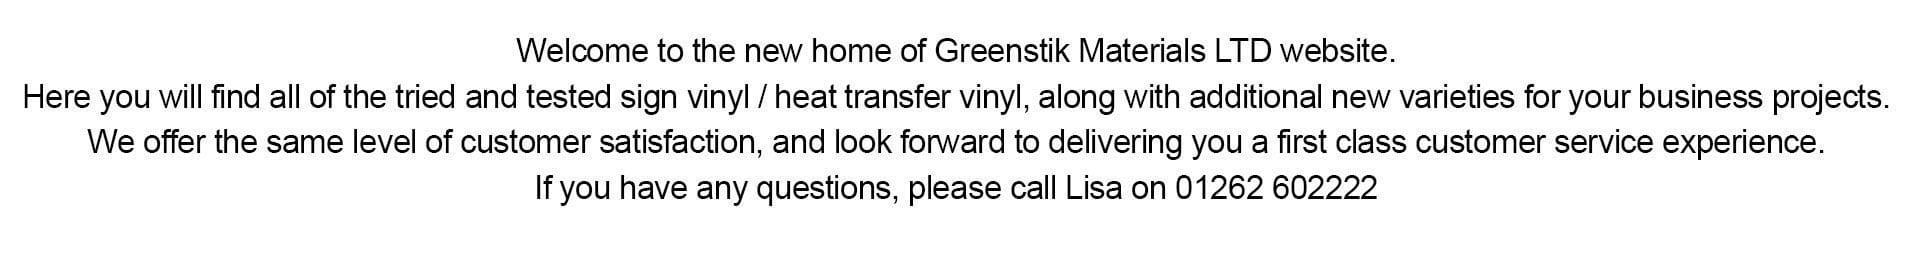 Desktop-GM-Trade-Vinyl-Landing-Page-1